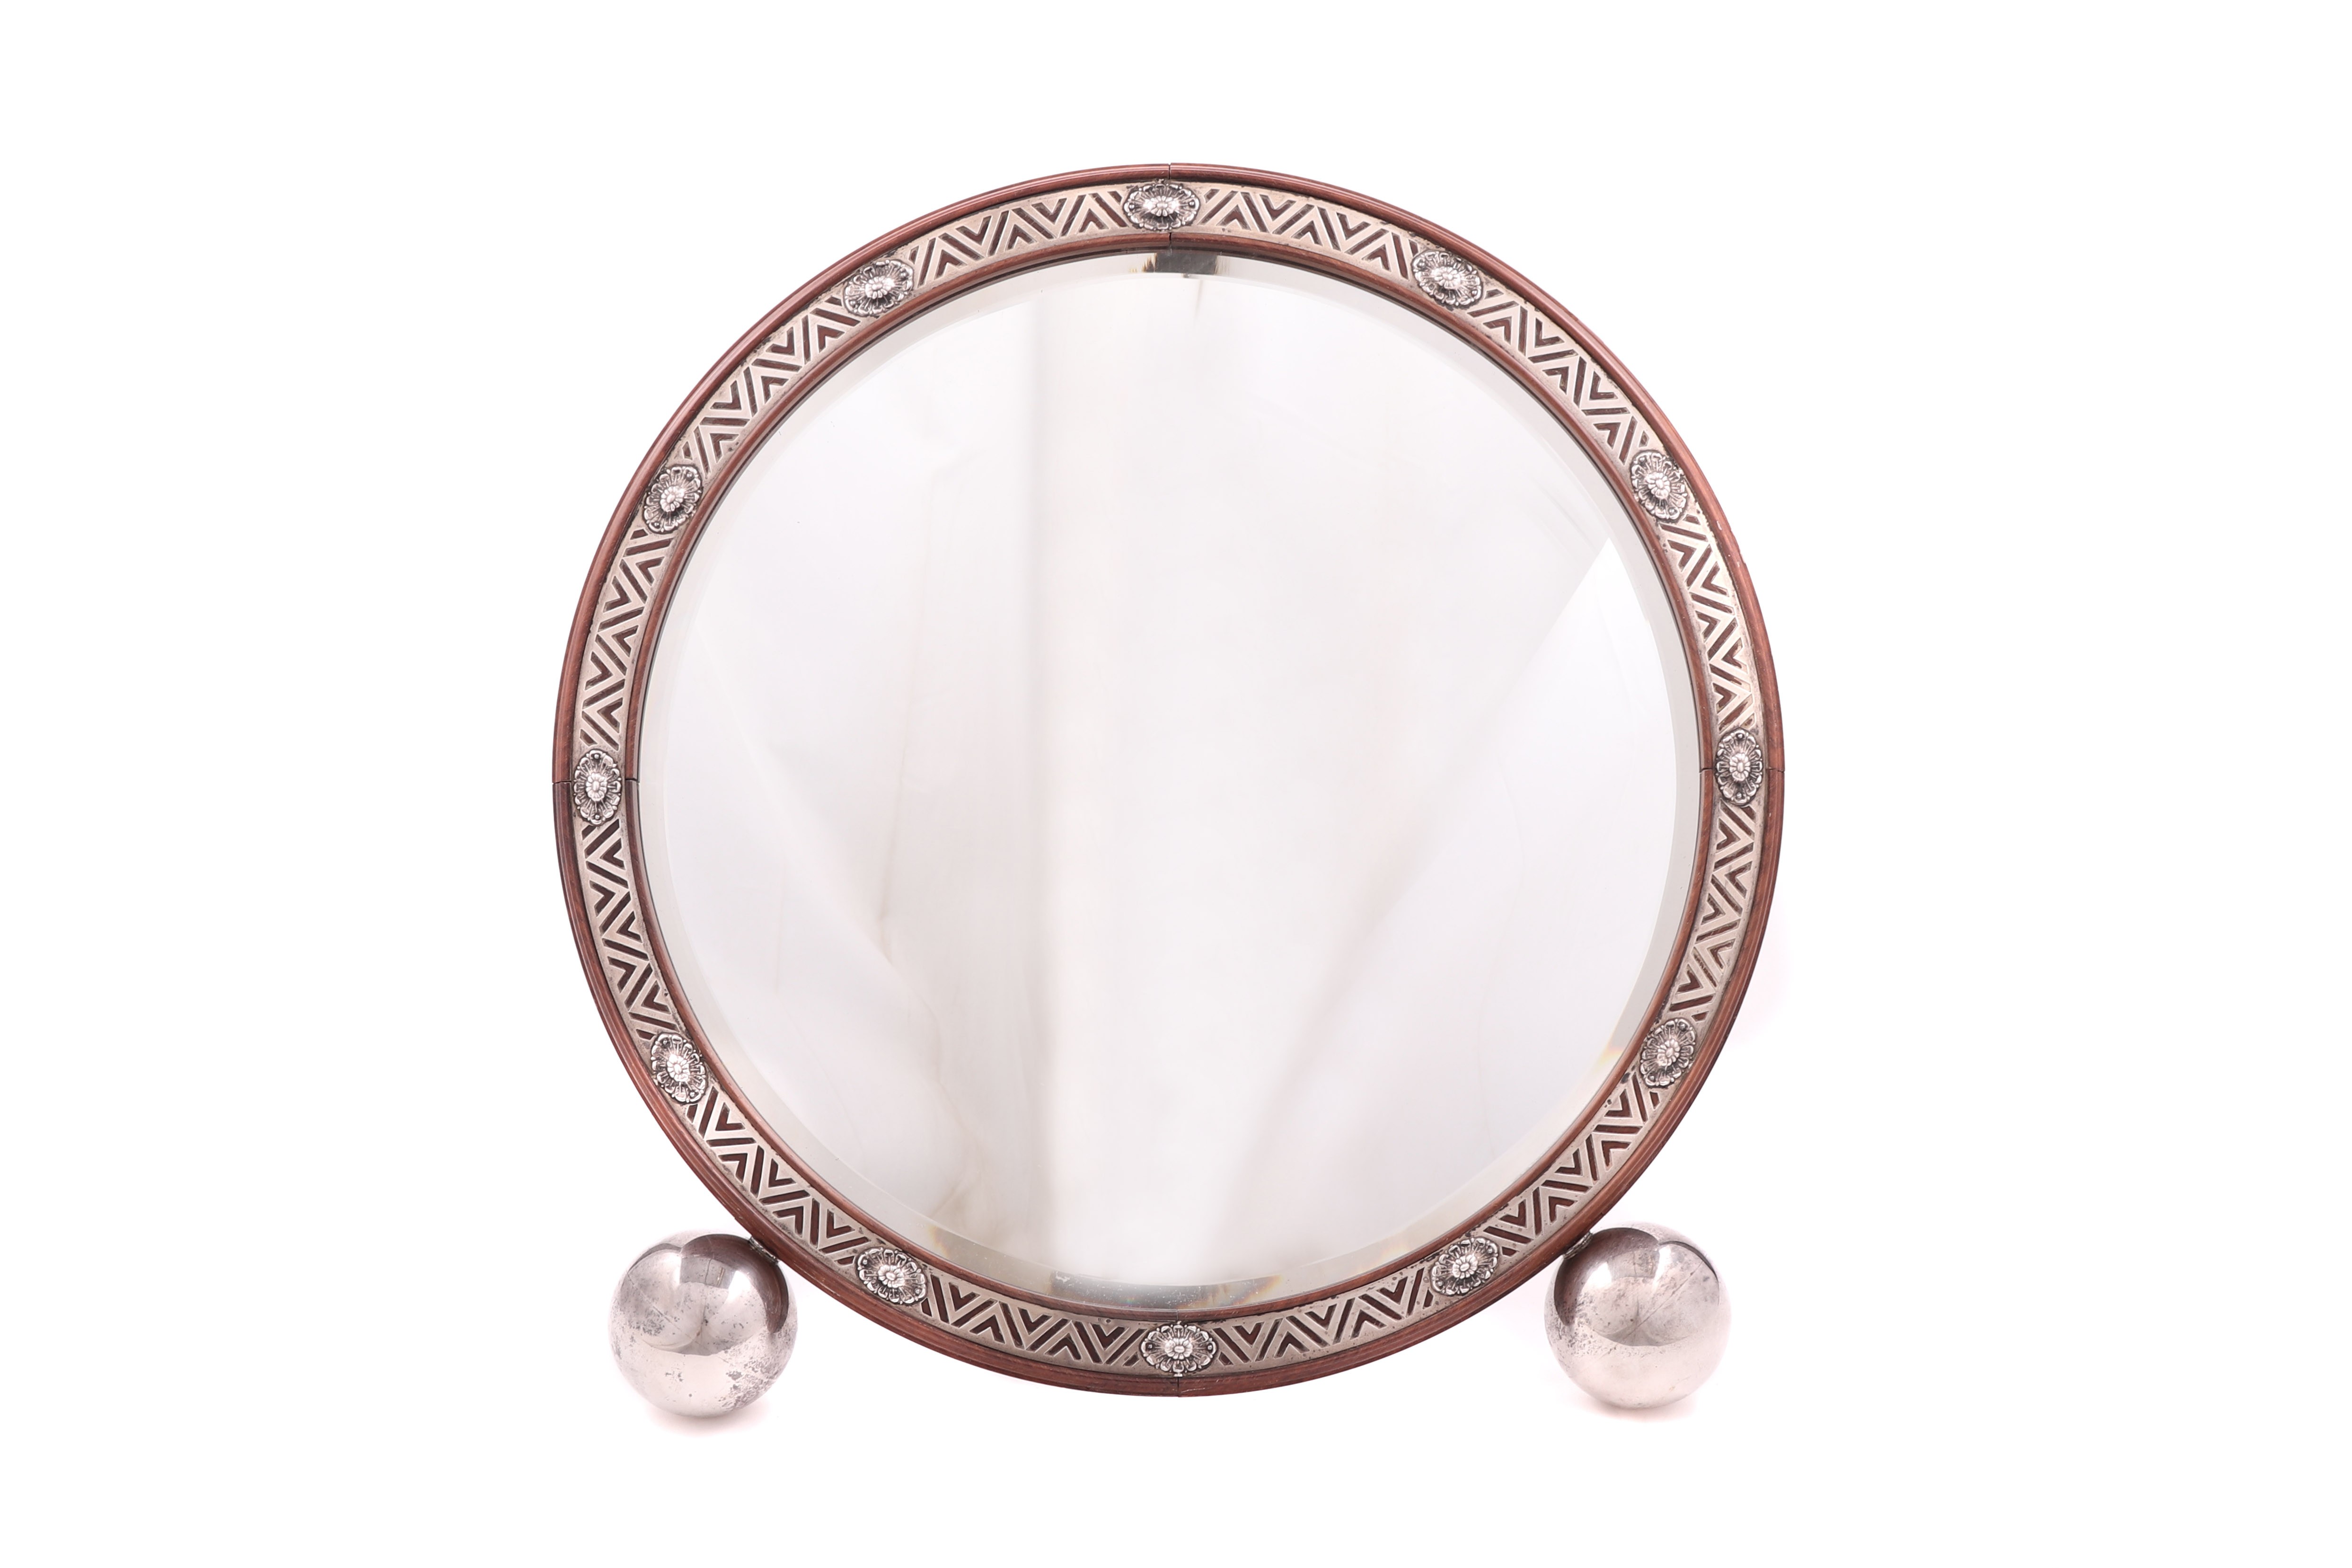 Grande espelho circular em pau-santo com pés e aplicações em prata portuguesa